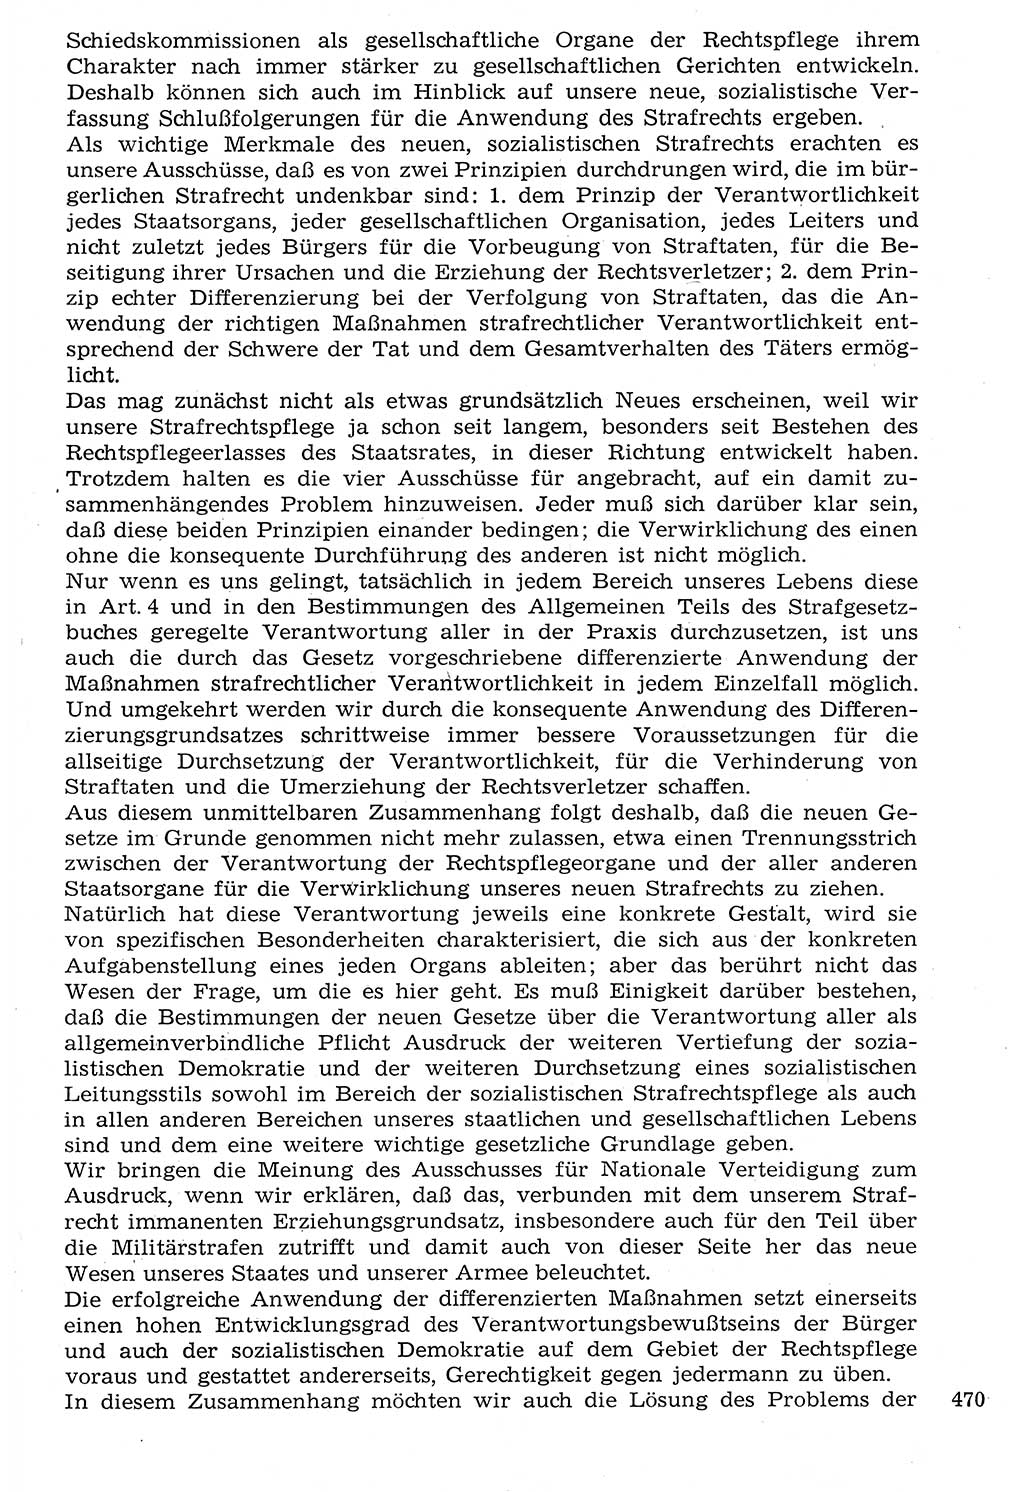 Staat und Recht (StuR), 17. Jahrgang [Deutsche Demokratische Republik (DDR)] 1968, Seite 470 (StuR DDR 1968, S. 470)